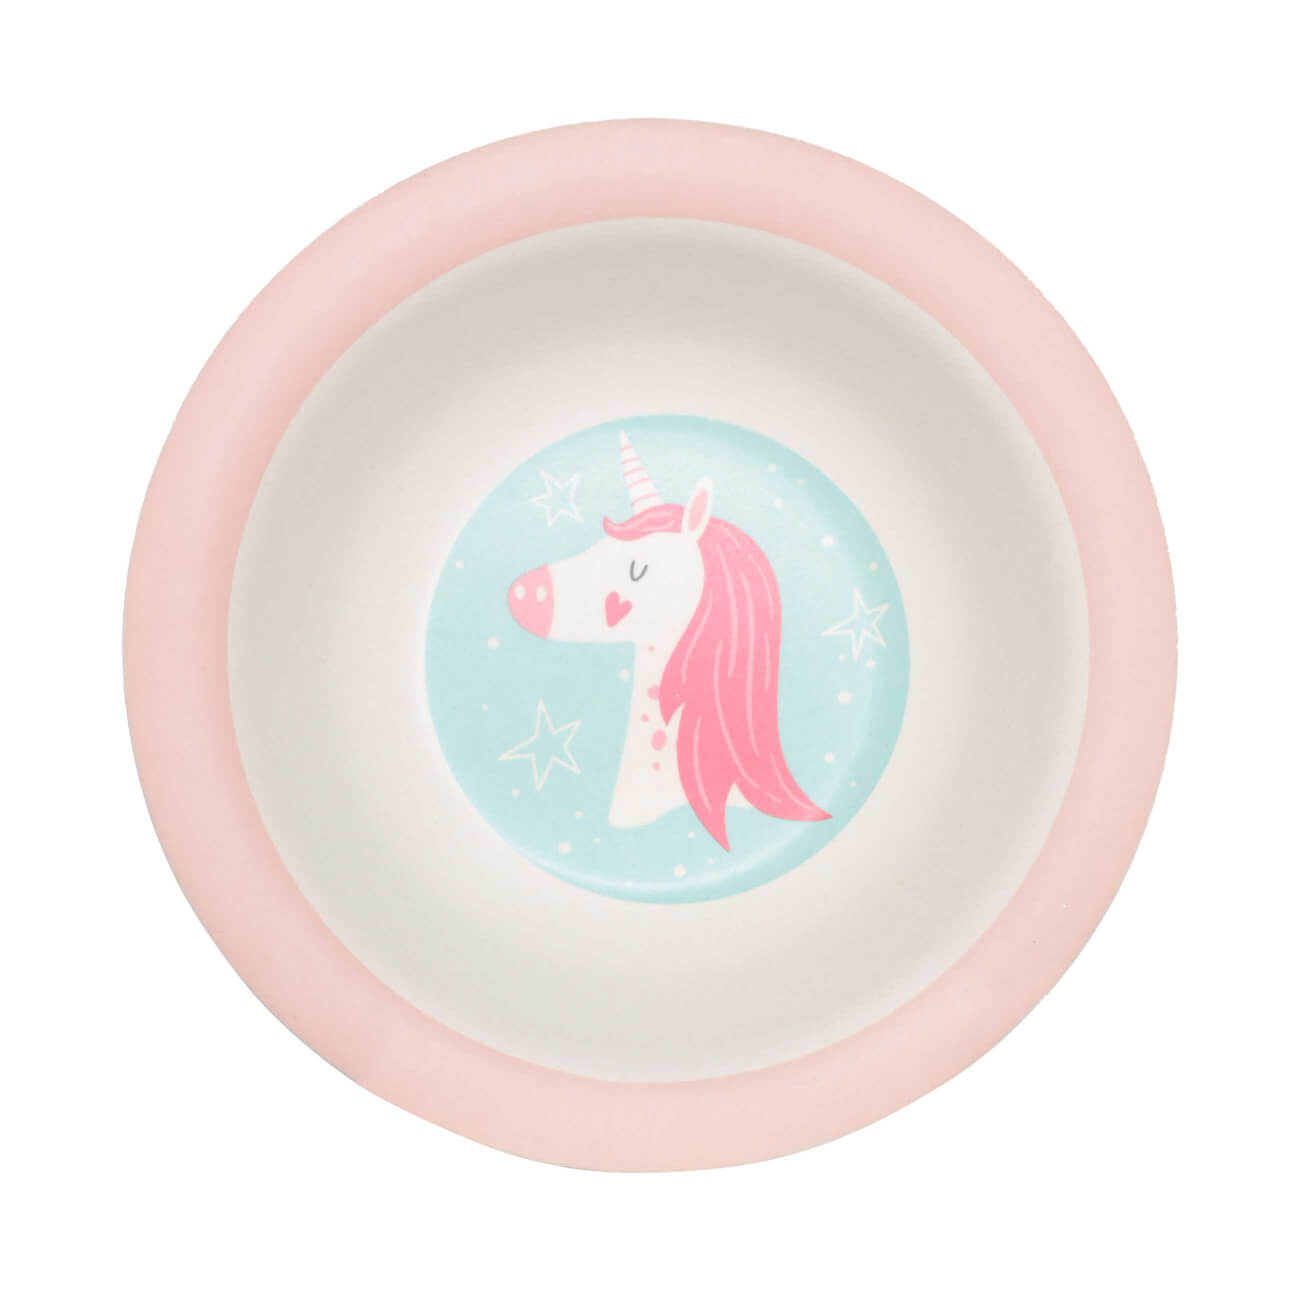 Тарелка суповая, детская, 15 см, бамбук, розово-мятная, Единорог и звезды, Unicorn